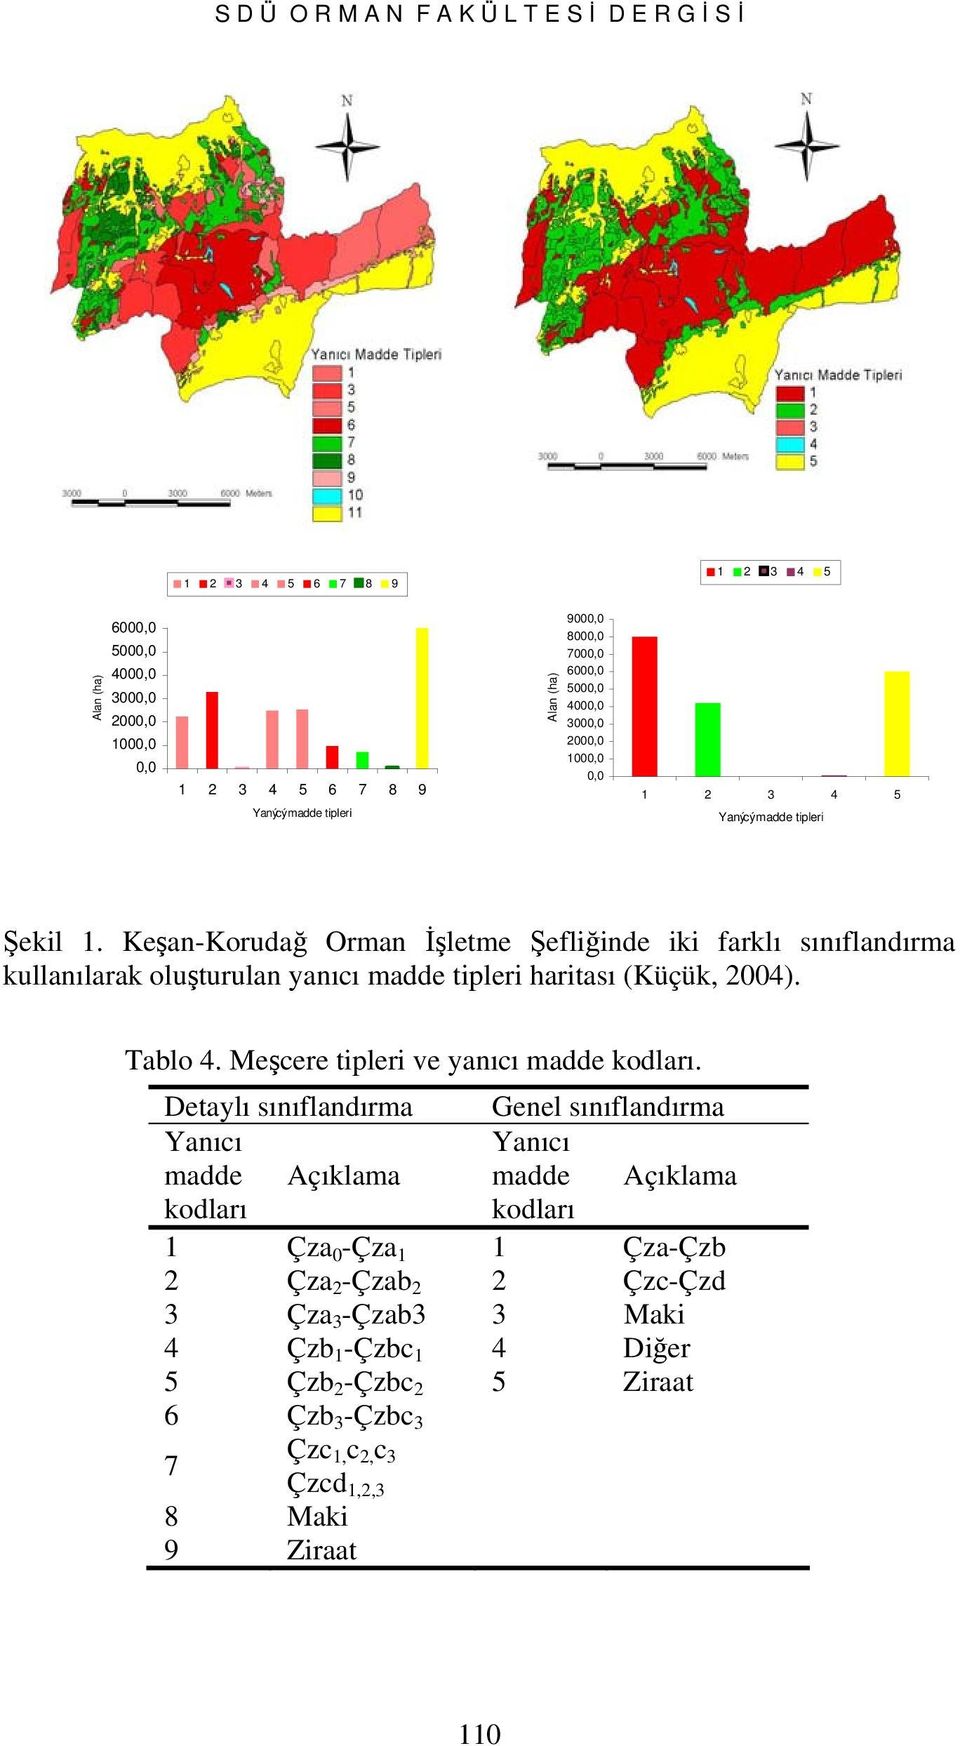 Keşan-Korudağ Orman İşletme Şefliğinde iki farklı sınıflandırma kullanılarak oluşturulan yanıcı madde tipleri haritası (Küçük, 2004). Tablo 4. Meşcere tipleri ve yanıcı madde kodları.